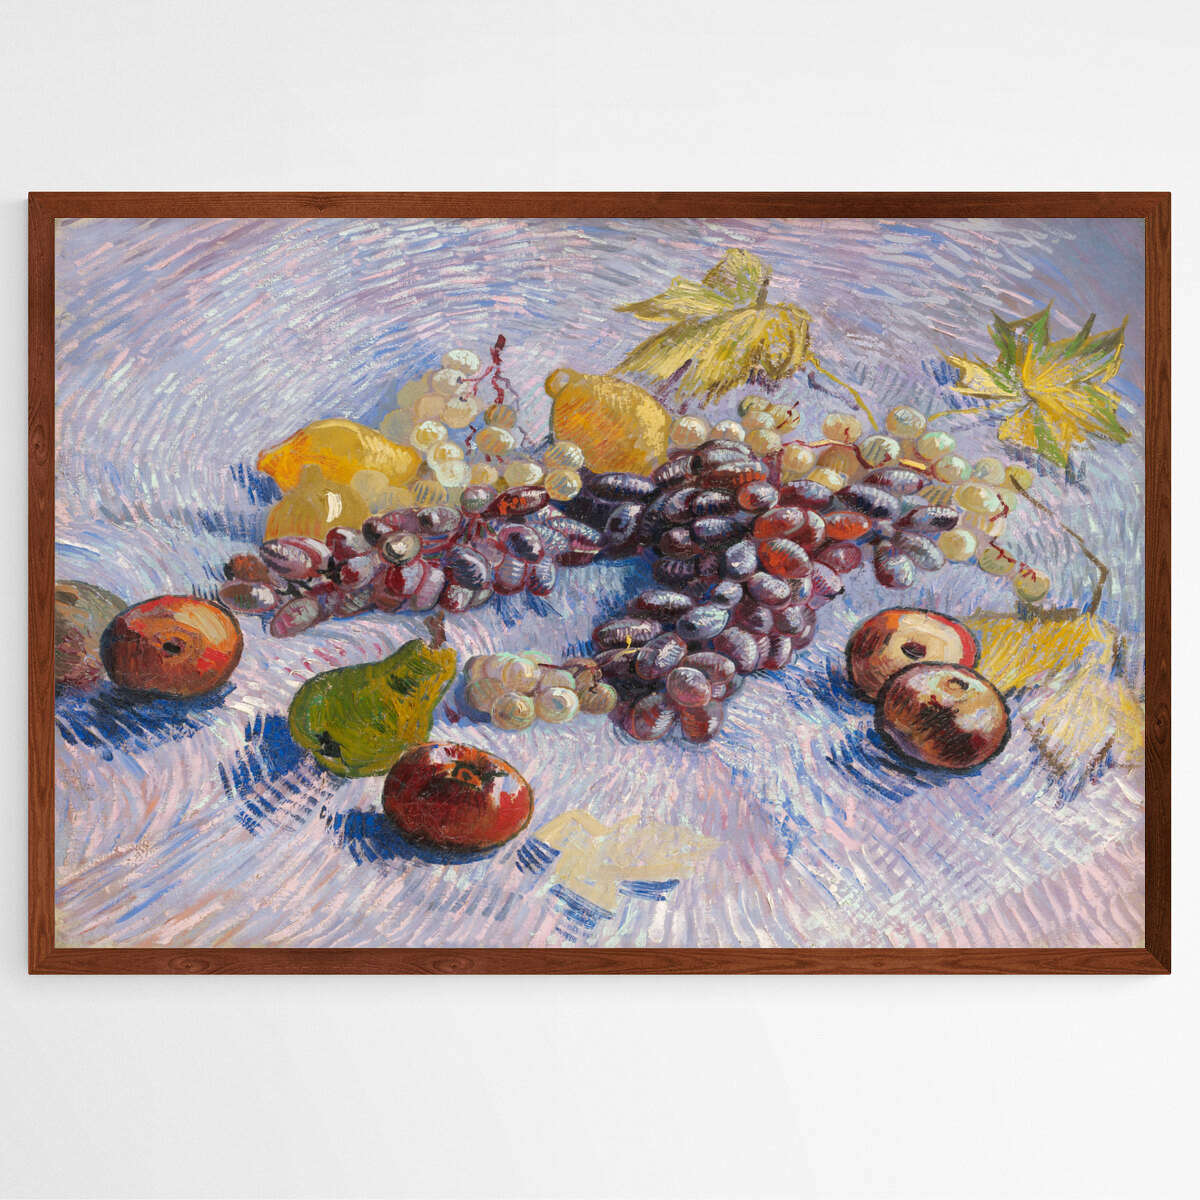 Grapes | Vincent Van Gogh Wall Art Prints - The Canvas Hive